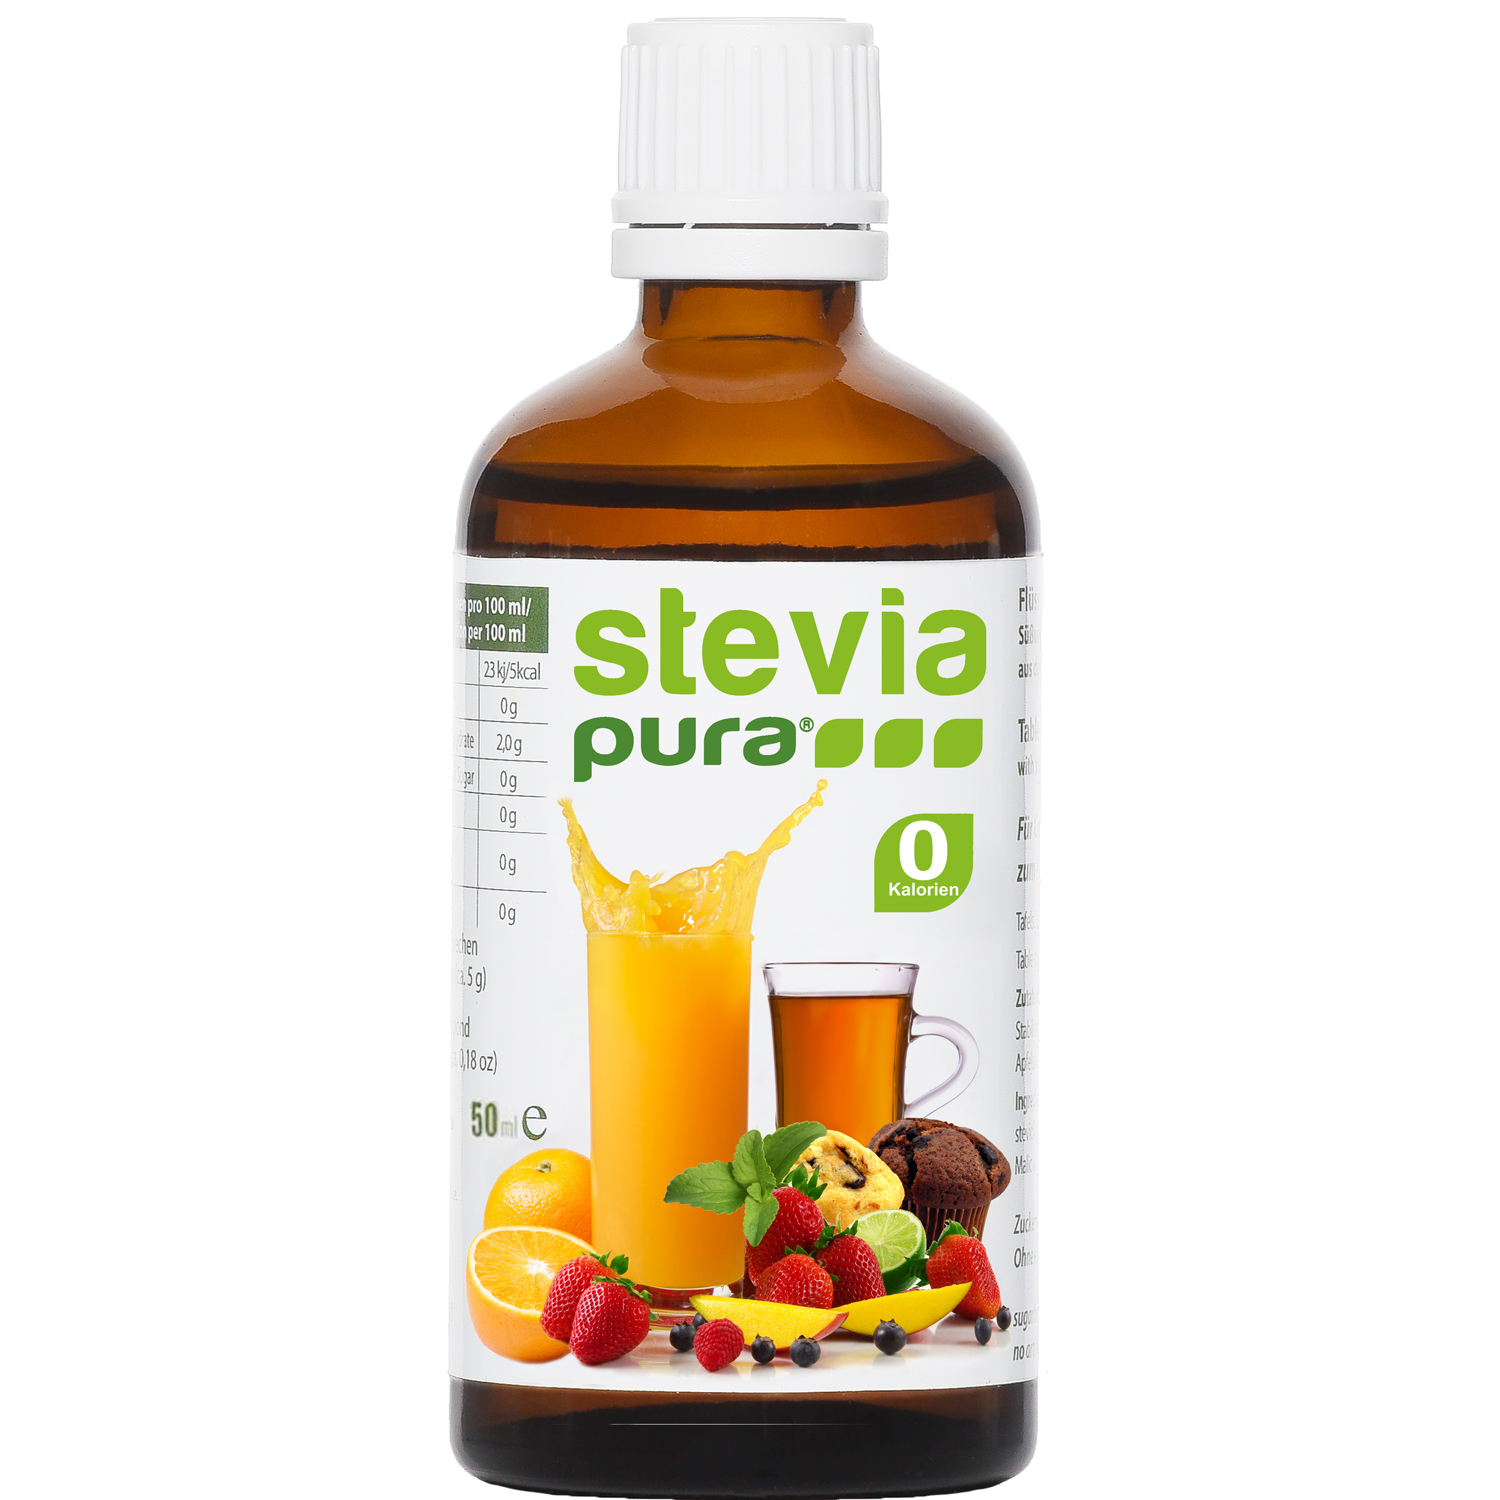 Adoçante Stevia líquida pura natural extraído naturalmente da planta stevia Vegan e não OGM, substituto do açúcar sem calorias 